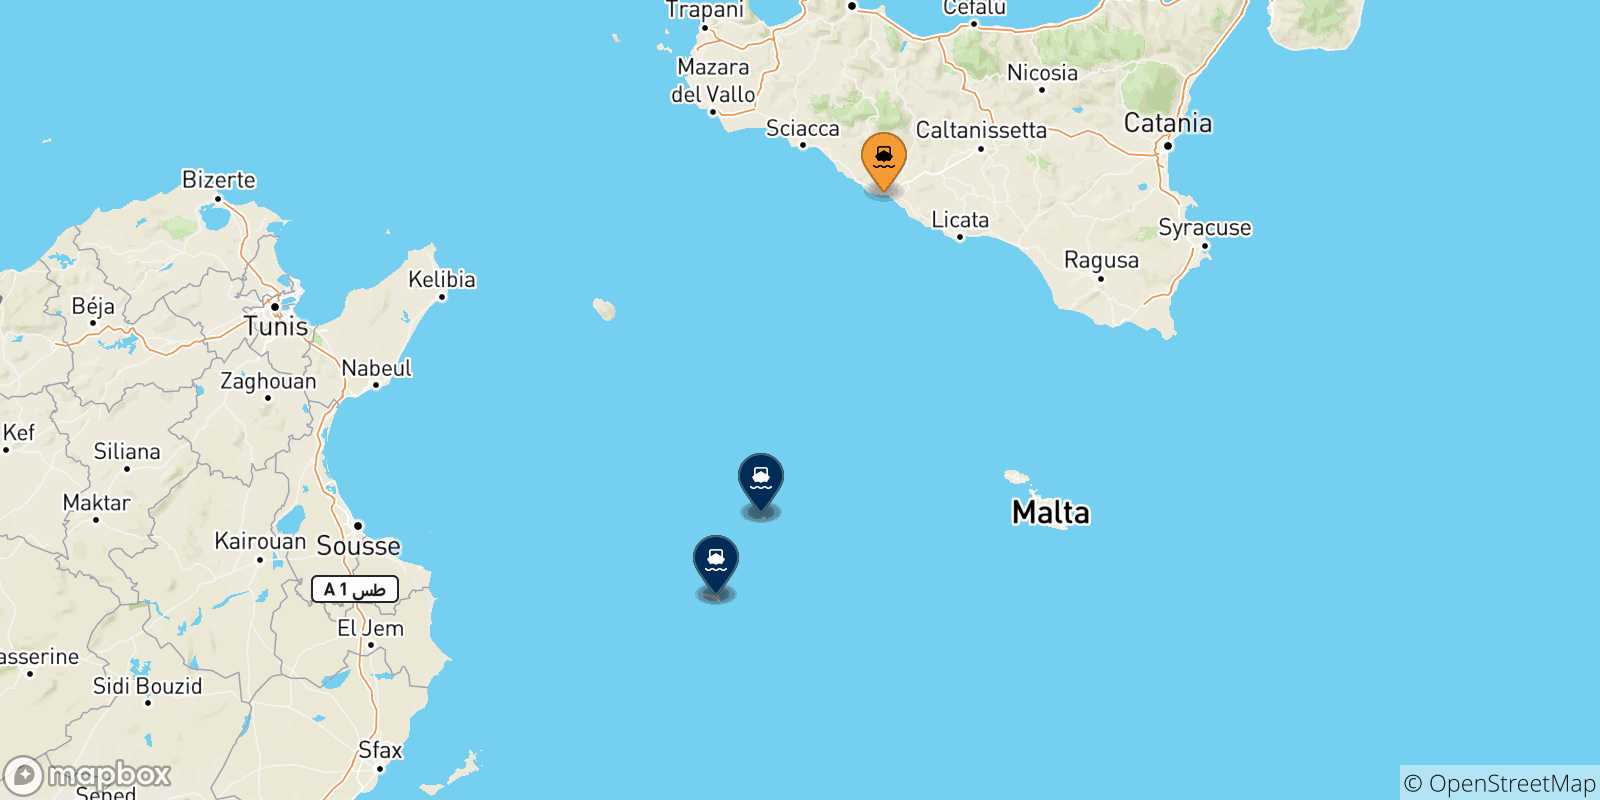 Mappa delle possibili rotte tra l'Italia e le Isole Pelagie